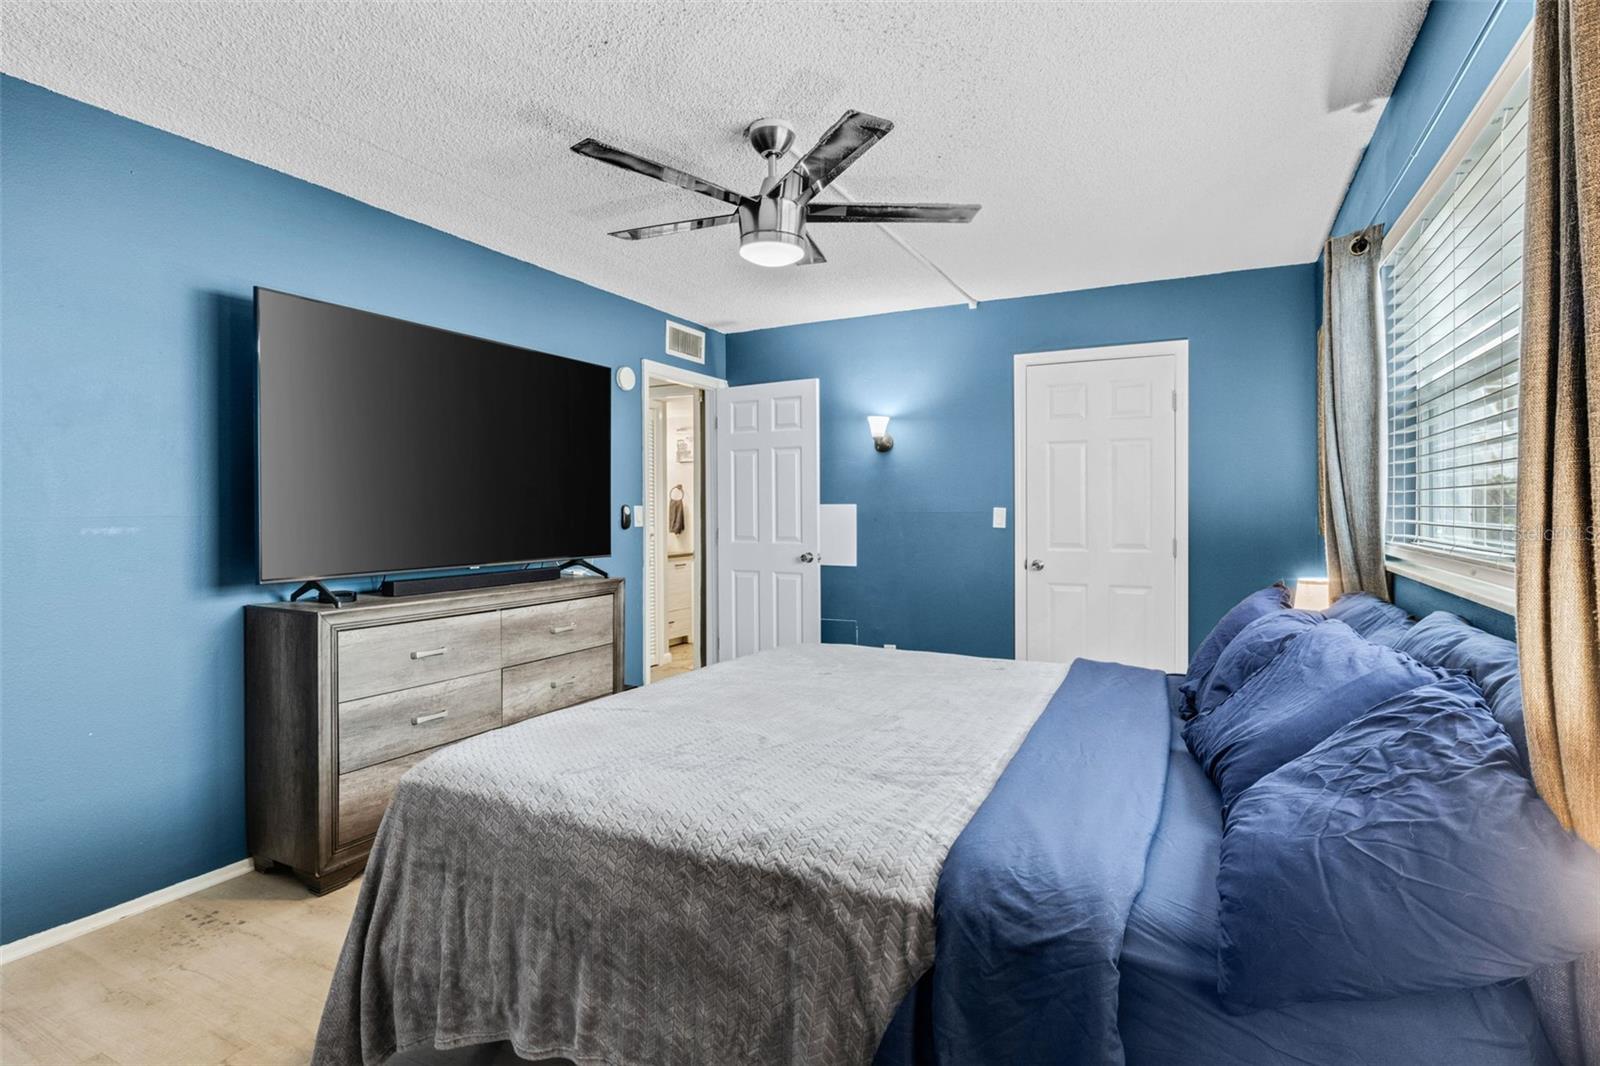 Bedroom with big screen TV